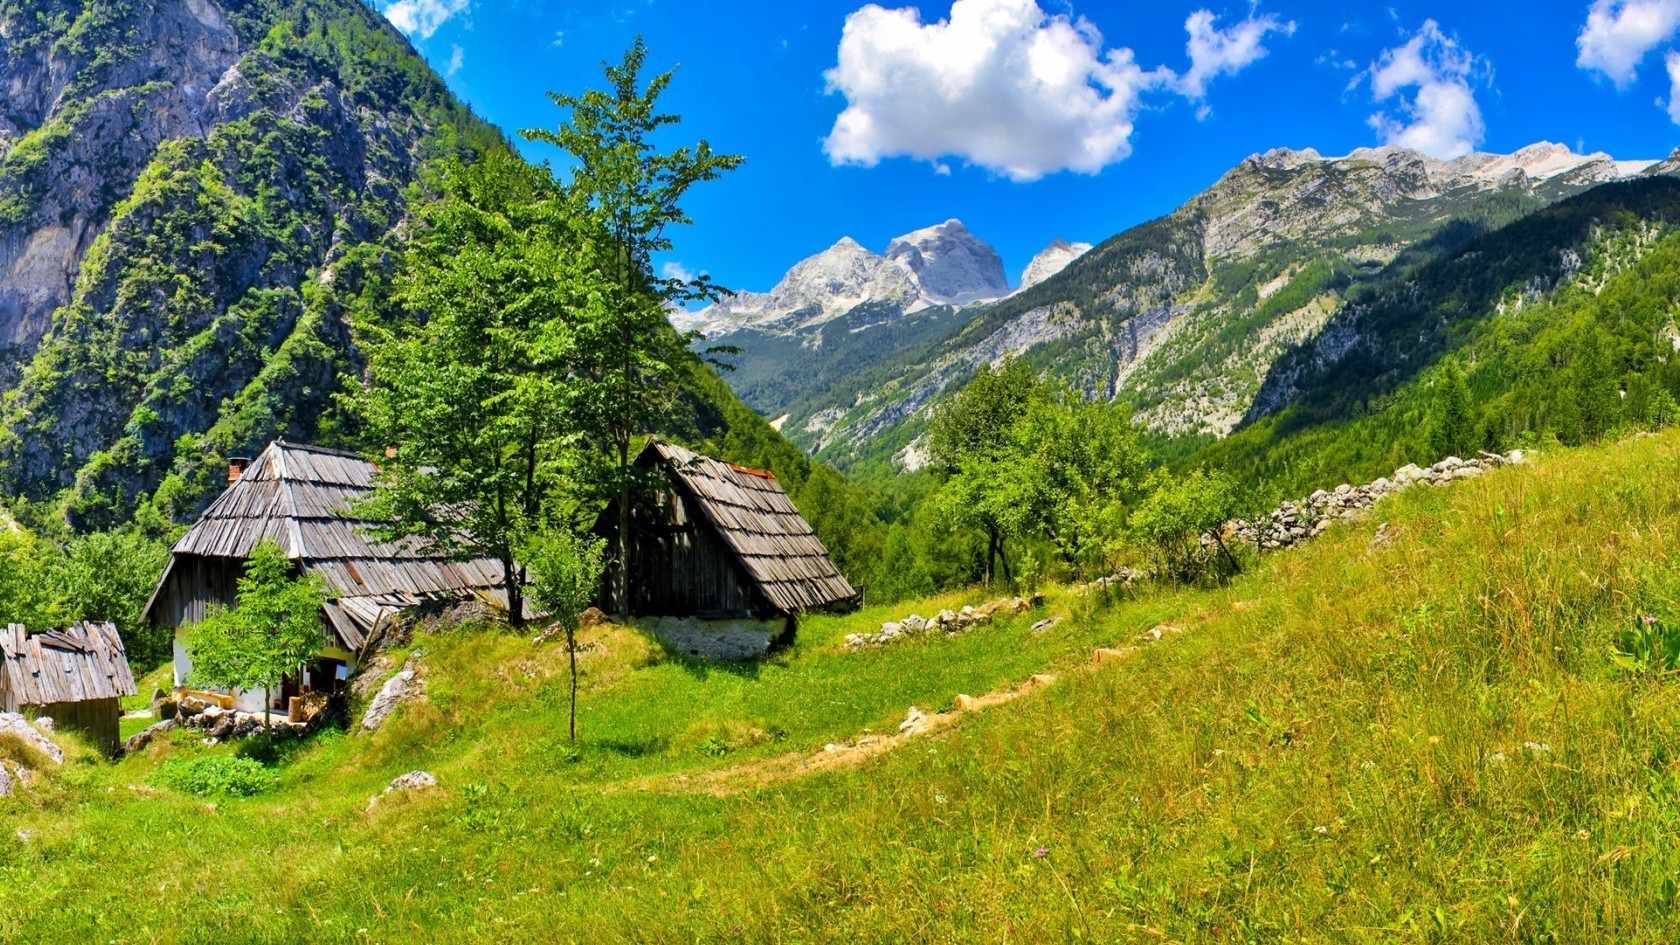 Slovenia Bovec Landscape for 1680 x 945 HDTV resolution